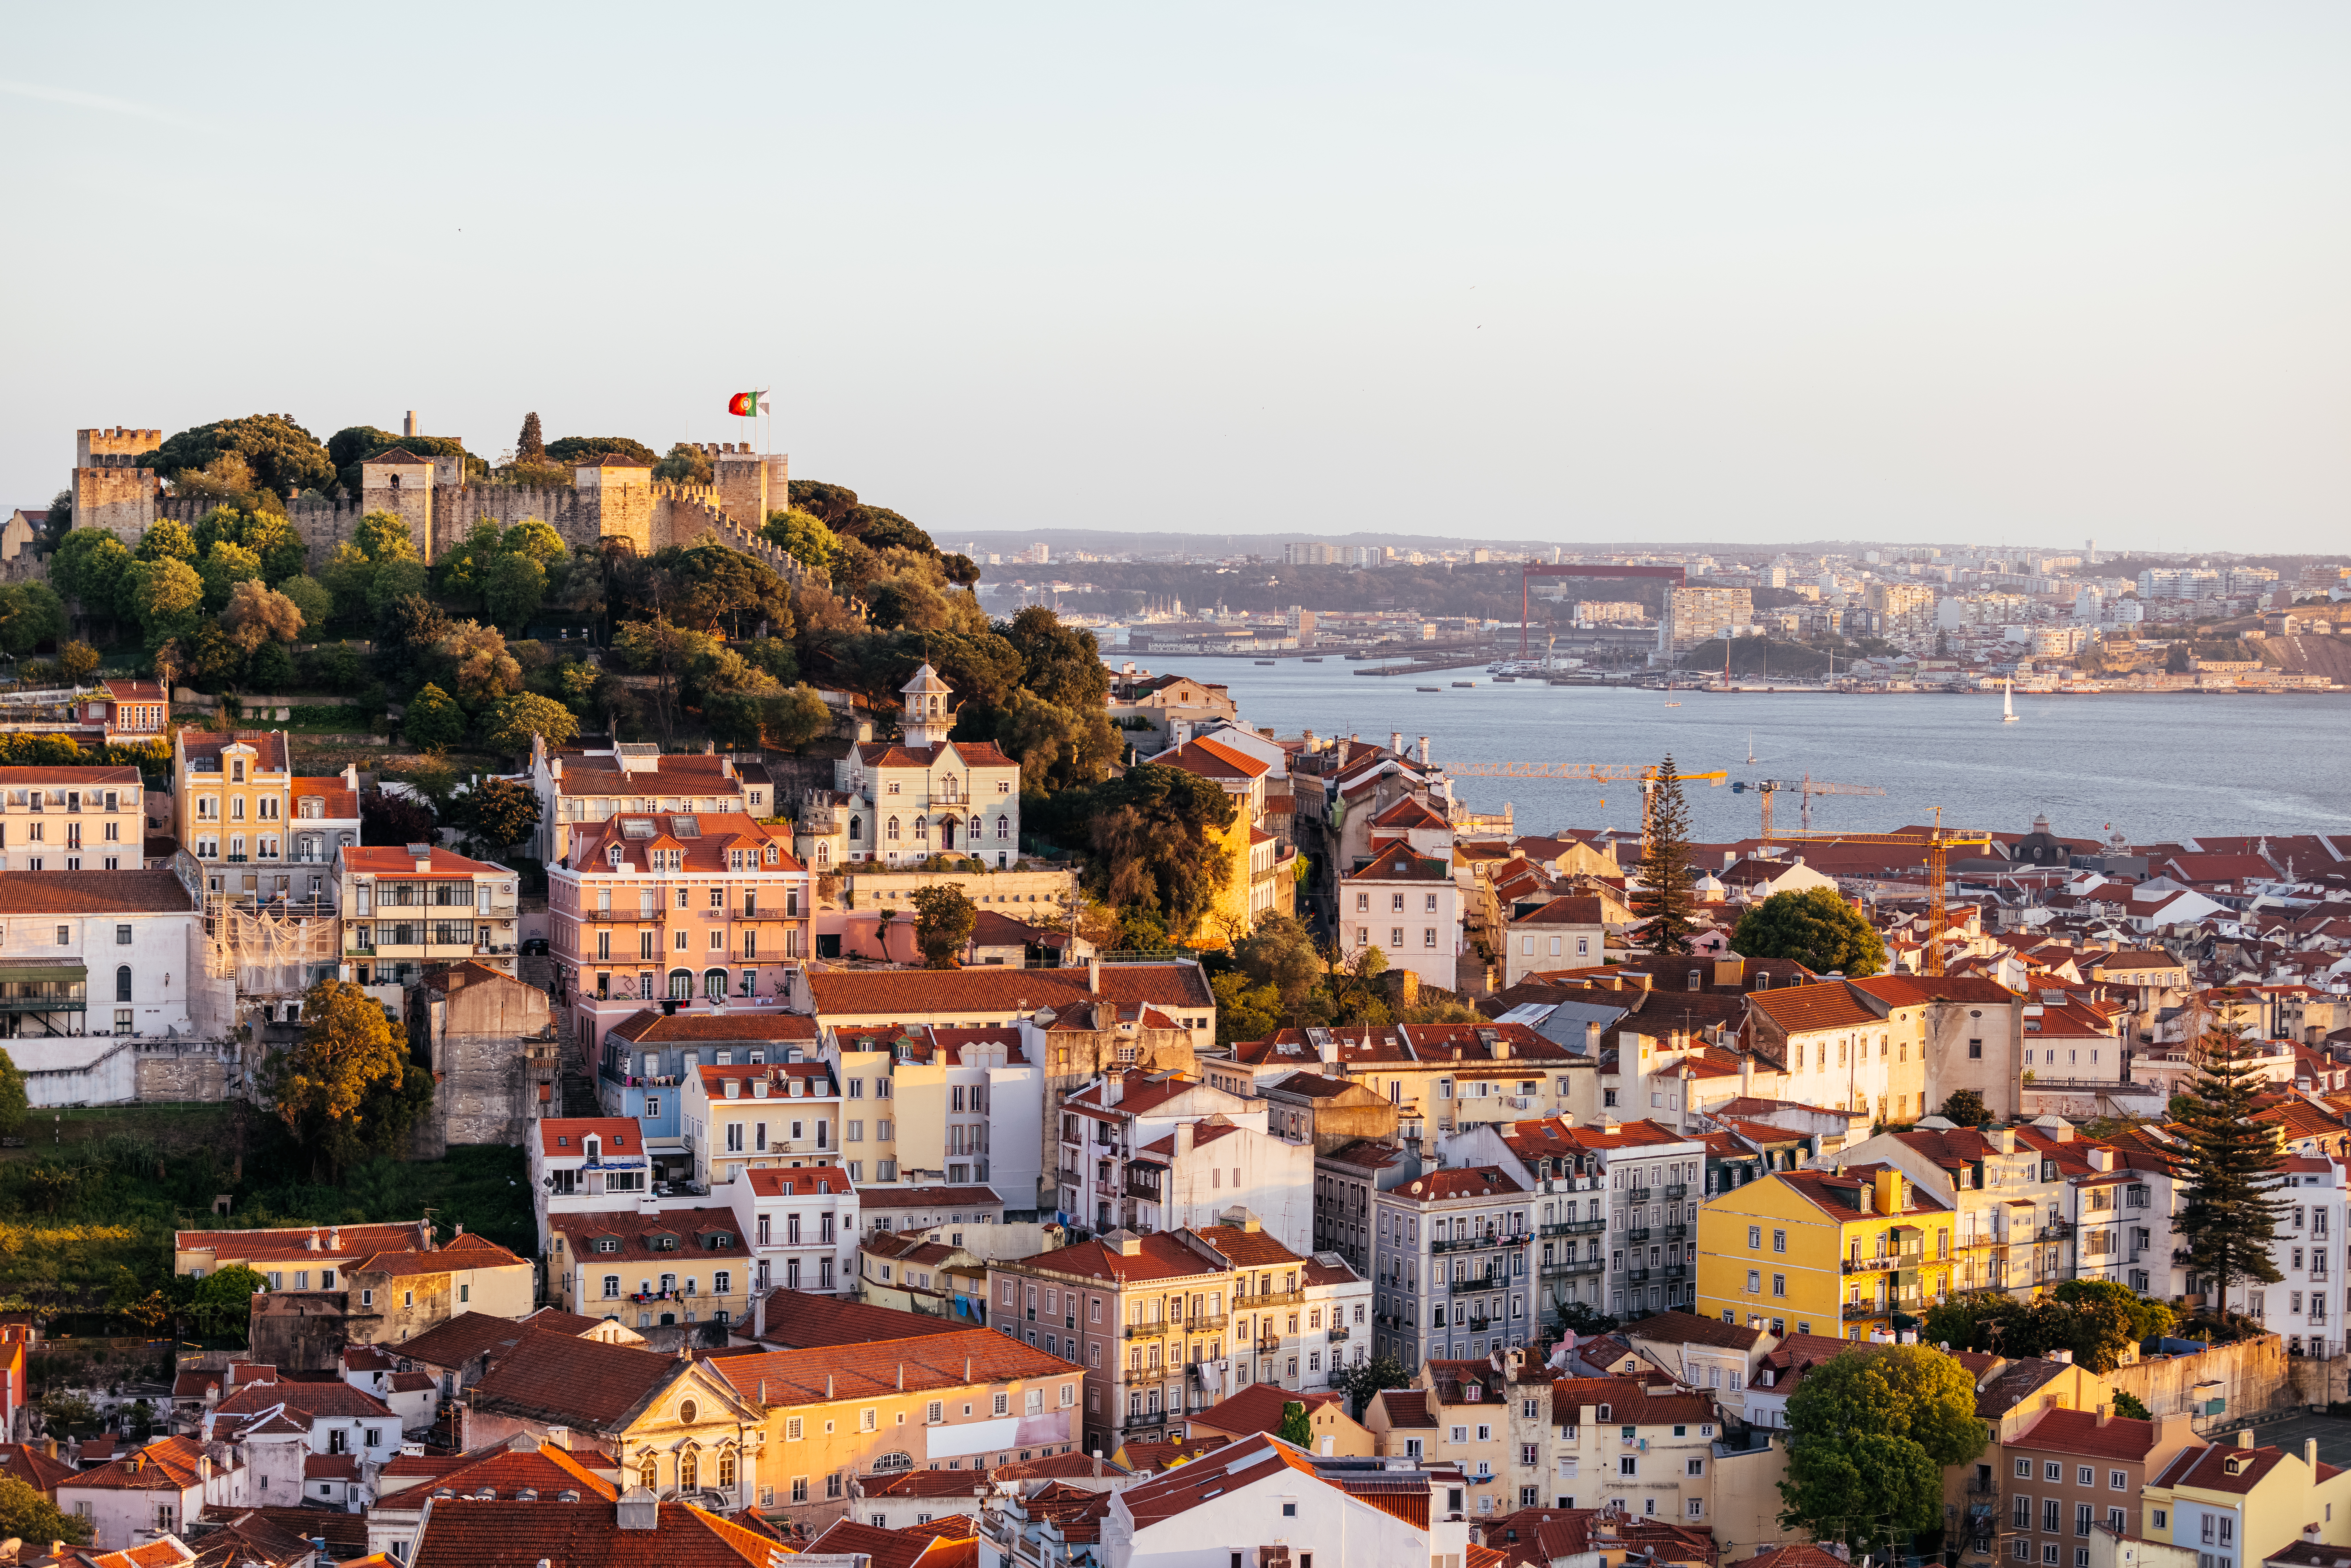 Die Landessprache in Lissabon ist Portugiesisch, in der gesamten Stadt wird jedoch wahrscheinlich Englisch gesprochen